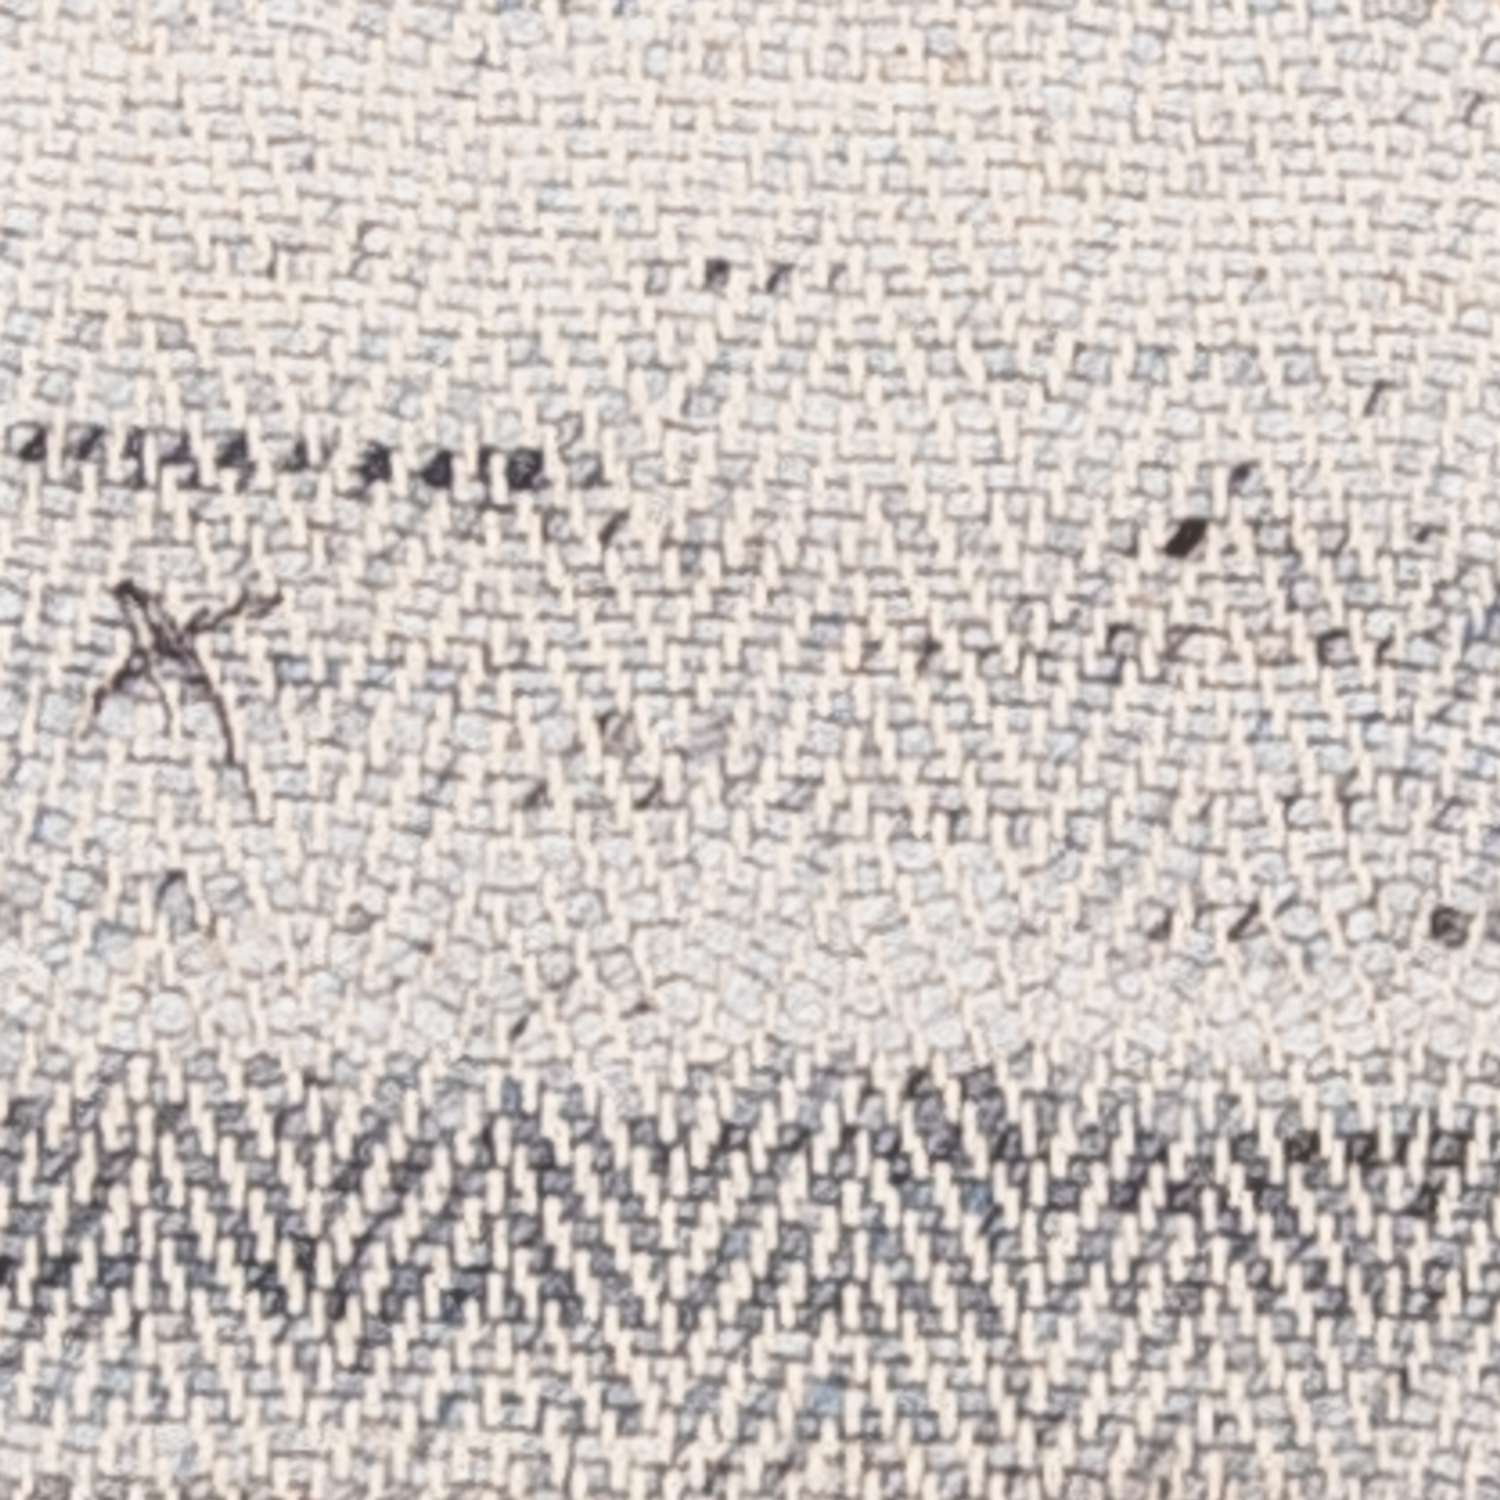 Runner Kelimský koberec - Orientální - 219 x 35 cm - příroda